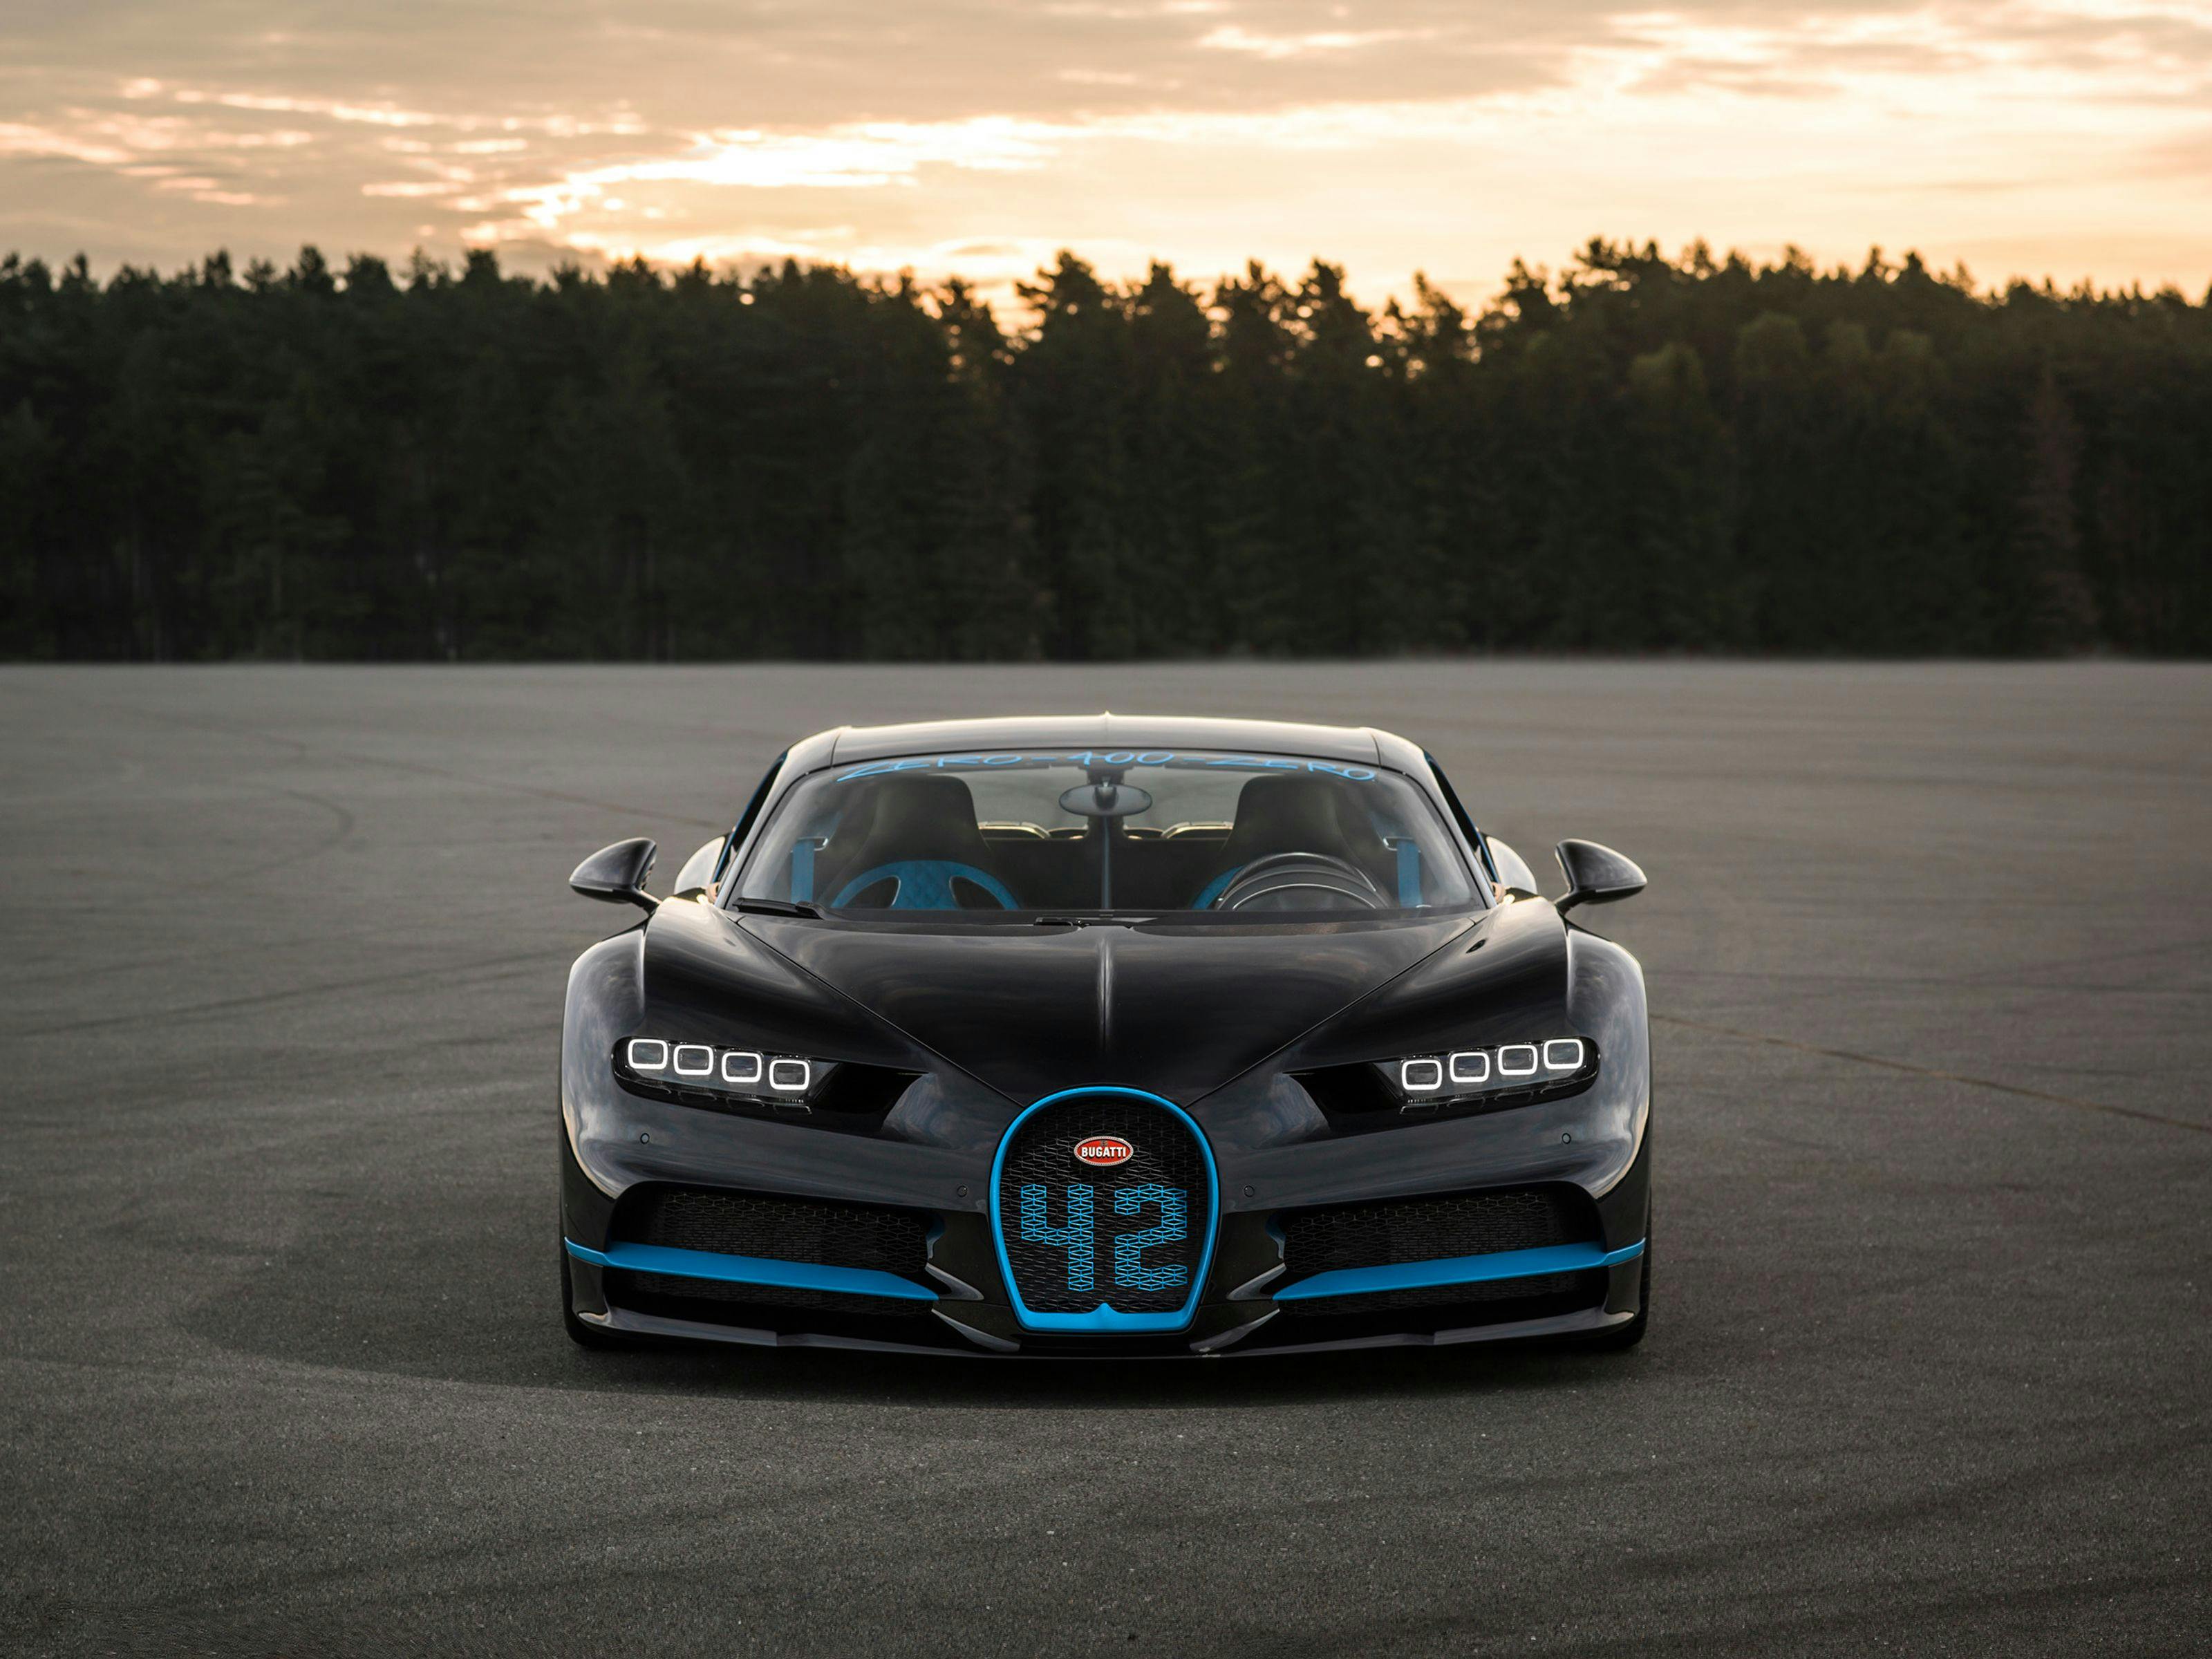 0-400-0 km/h in 42 seconds: Bugatti Chiron sets world record